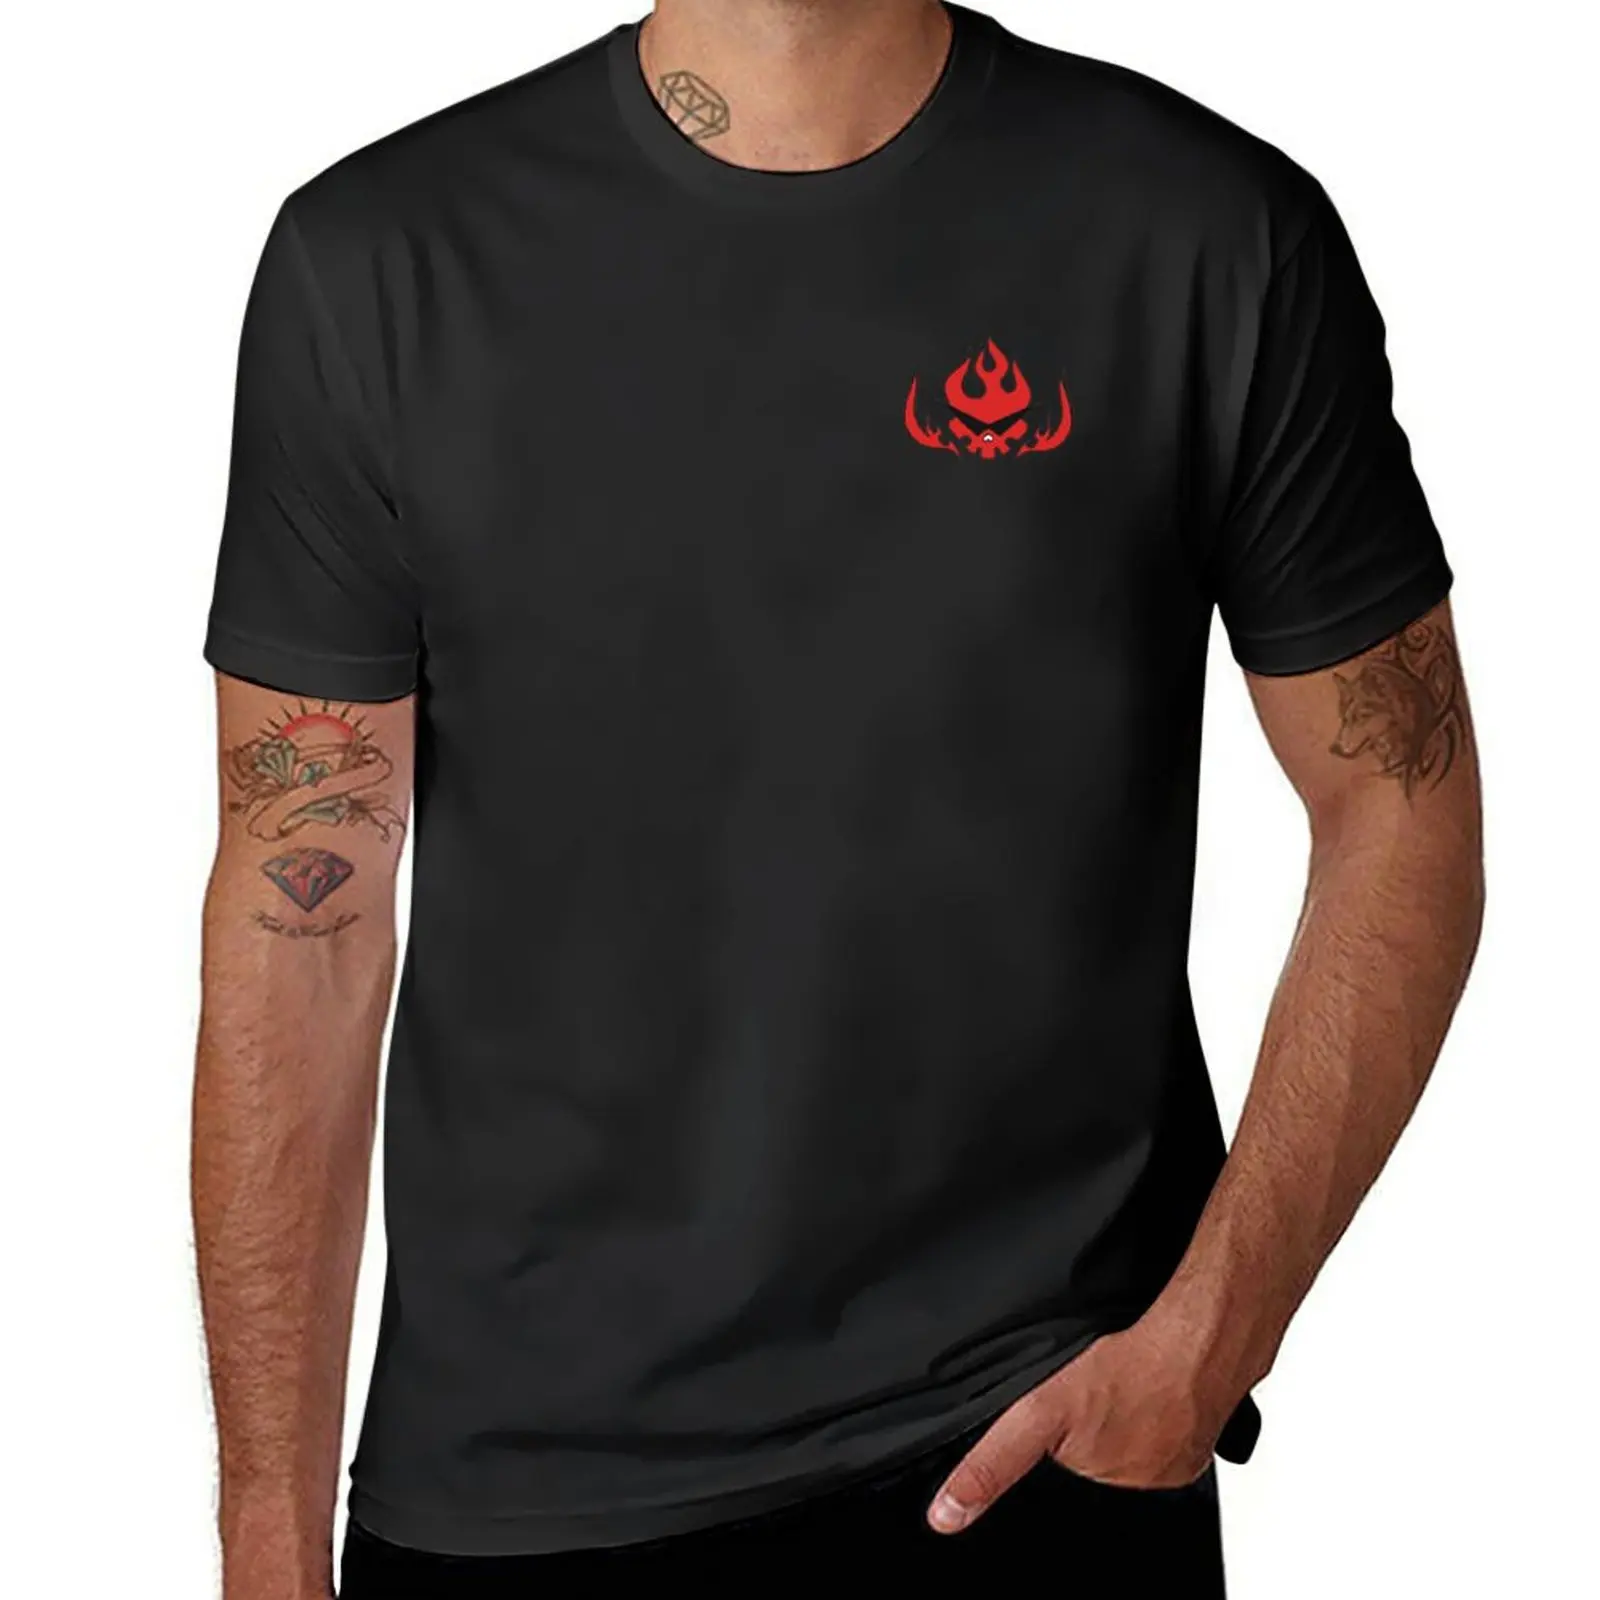 

Новая команда Dai Gurren, футболка с логотипом, футболка оверсайз, футболки на заказ, графические футболки, черная футболка, футболка оверсайз для мужчин